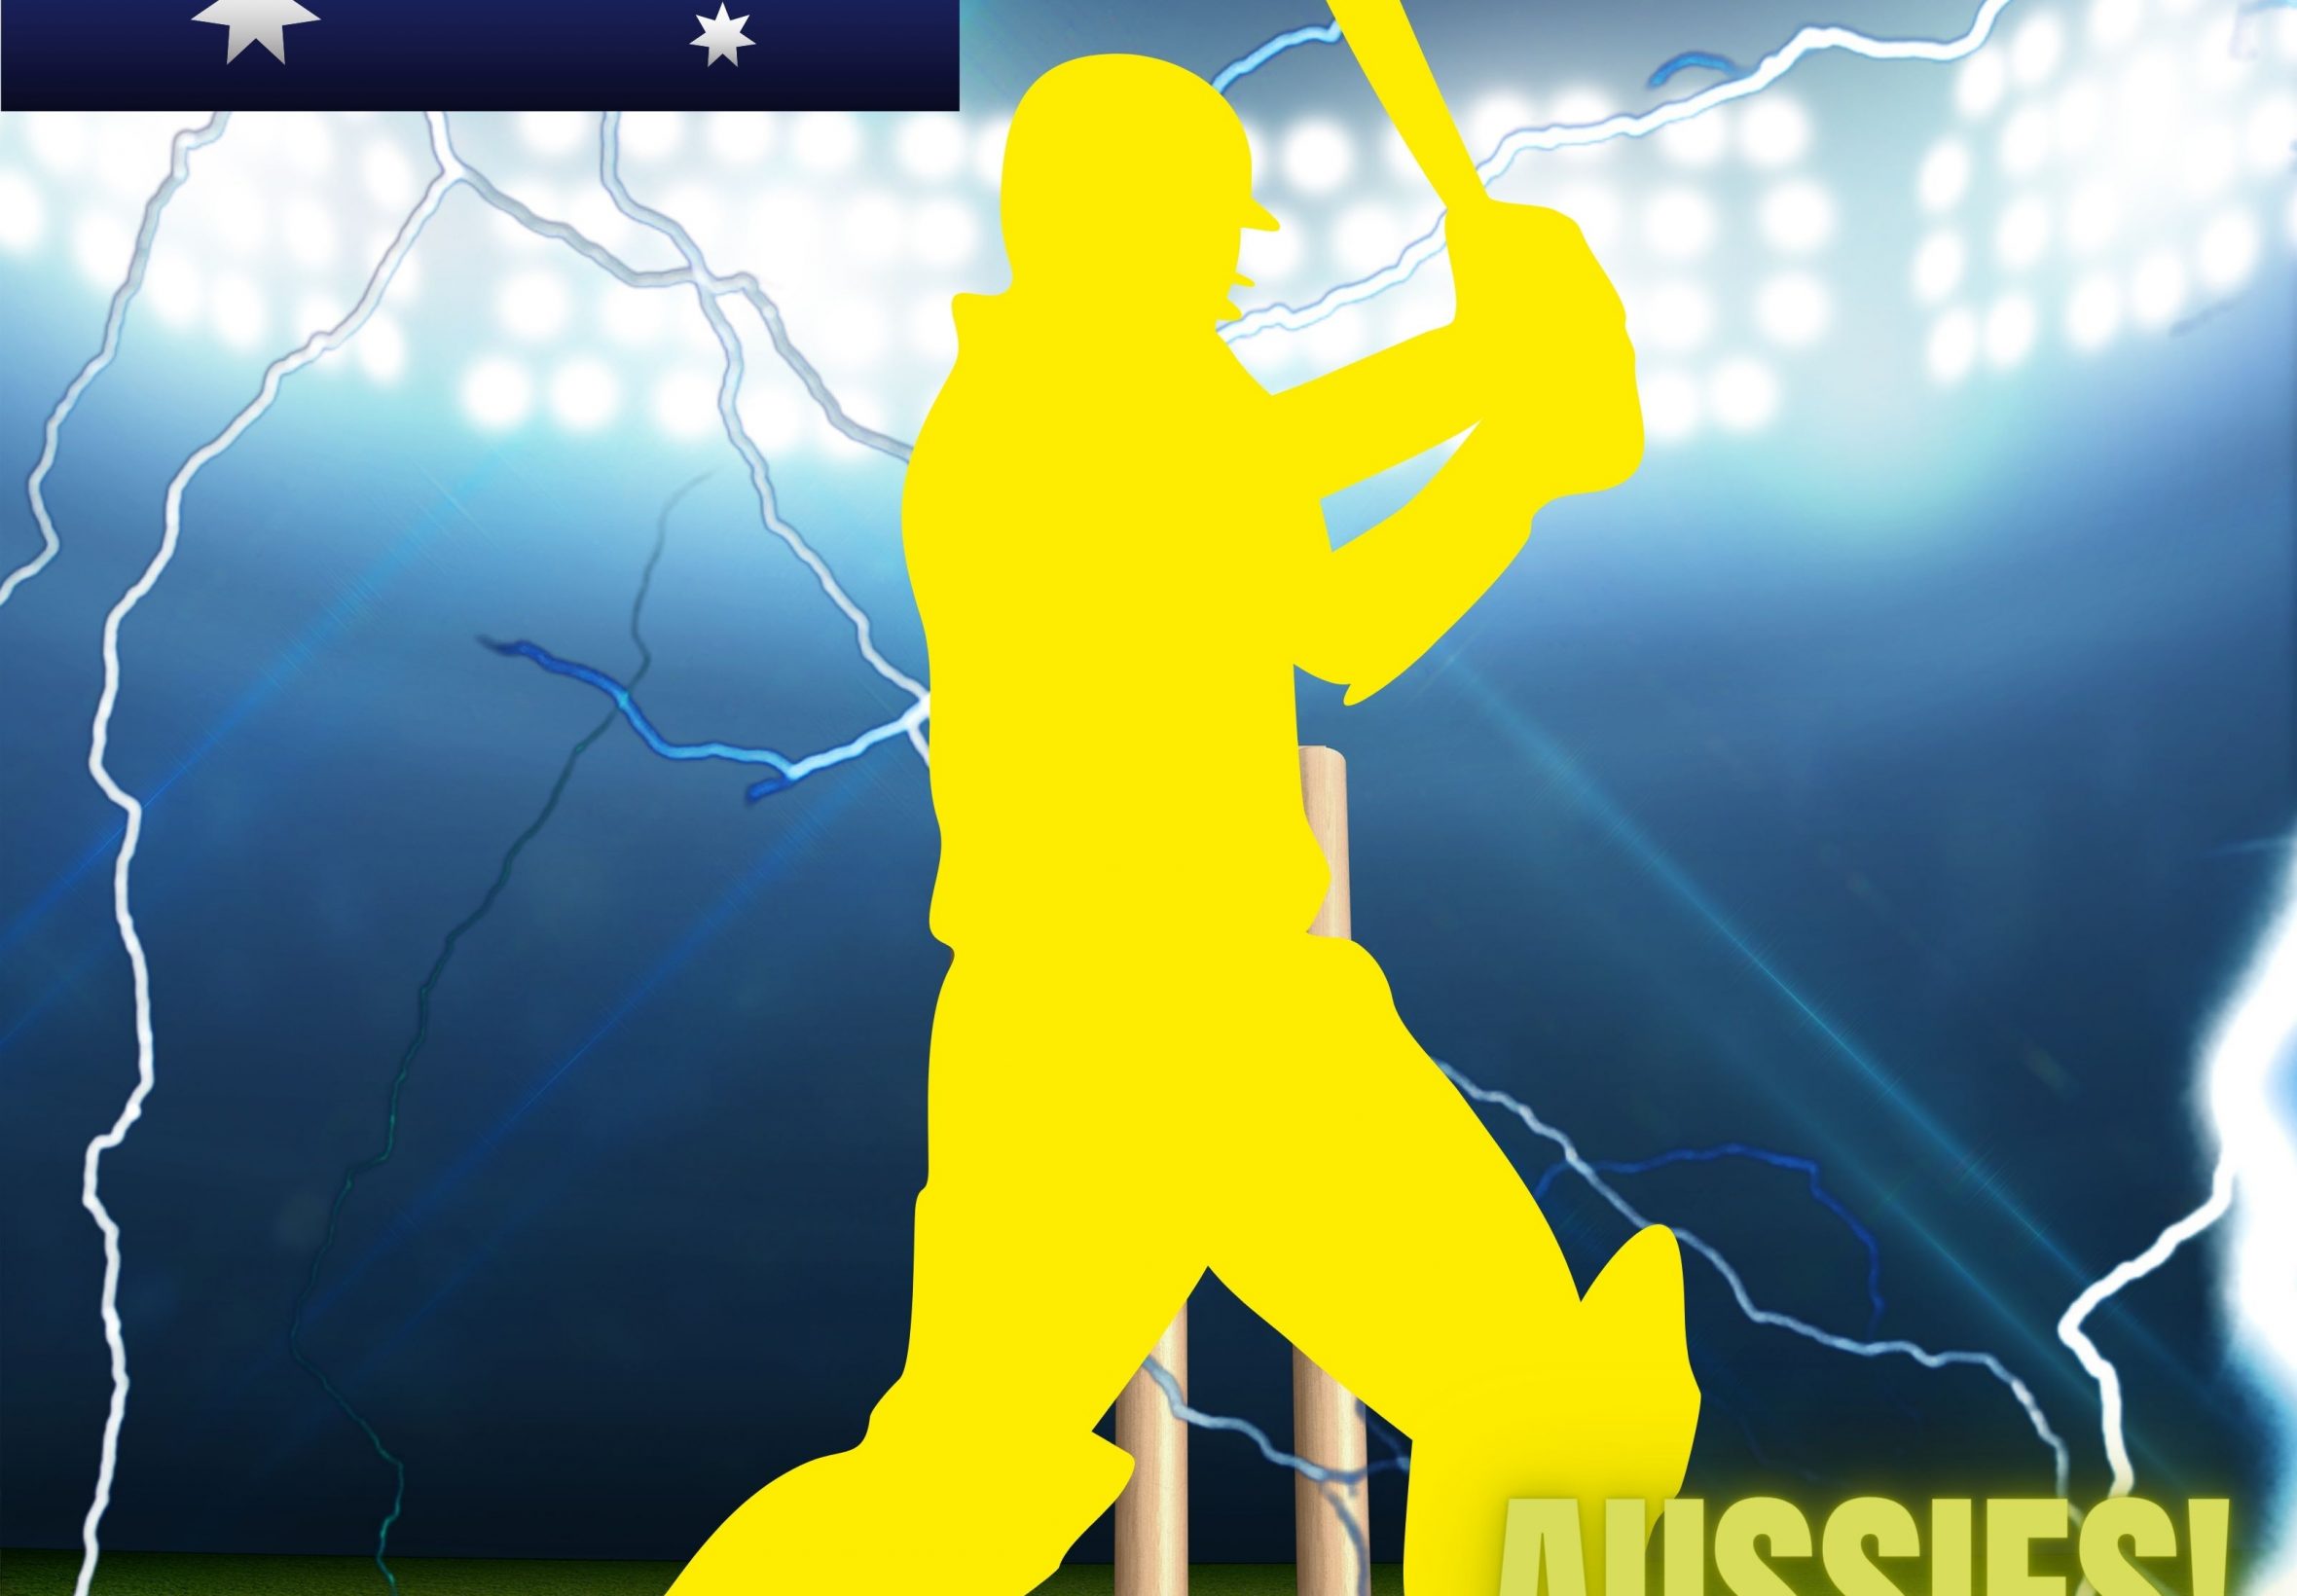 2360x1640 iPad Air wallpaper 4k Australia Cricket Stadium iPad Wallpaper 2360x1640 pixels resolution